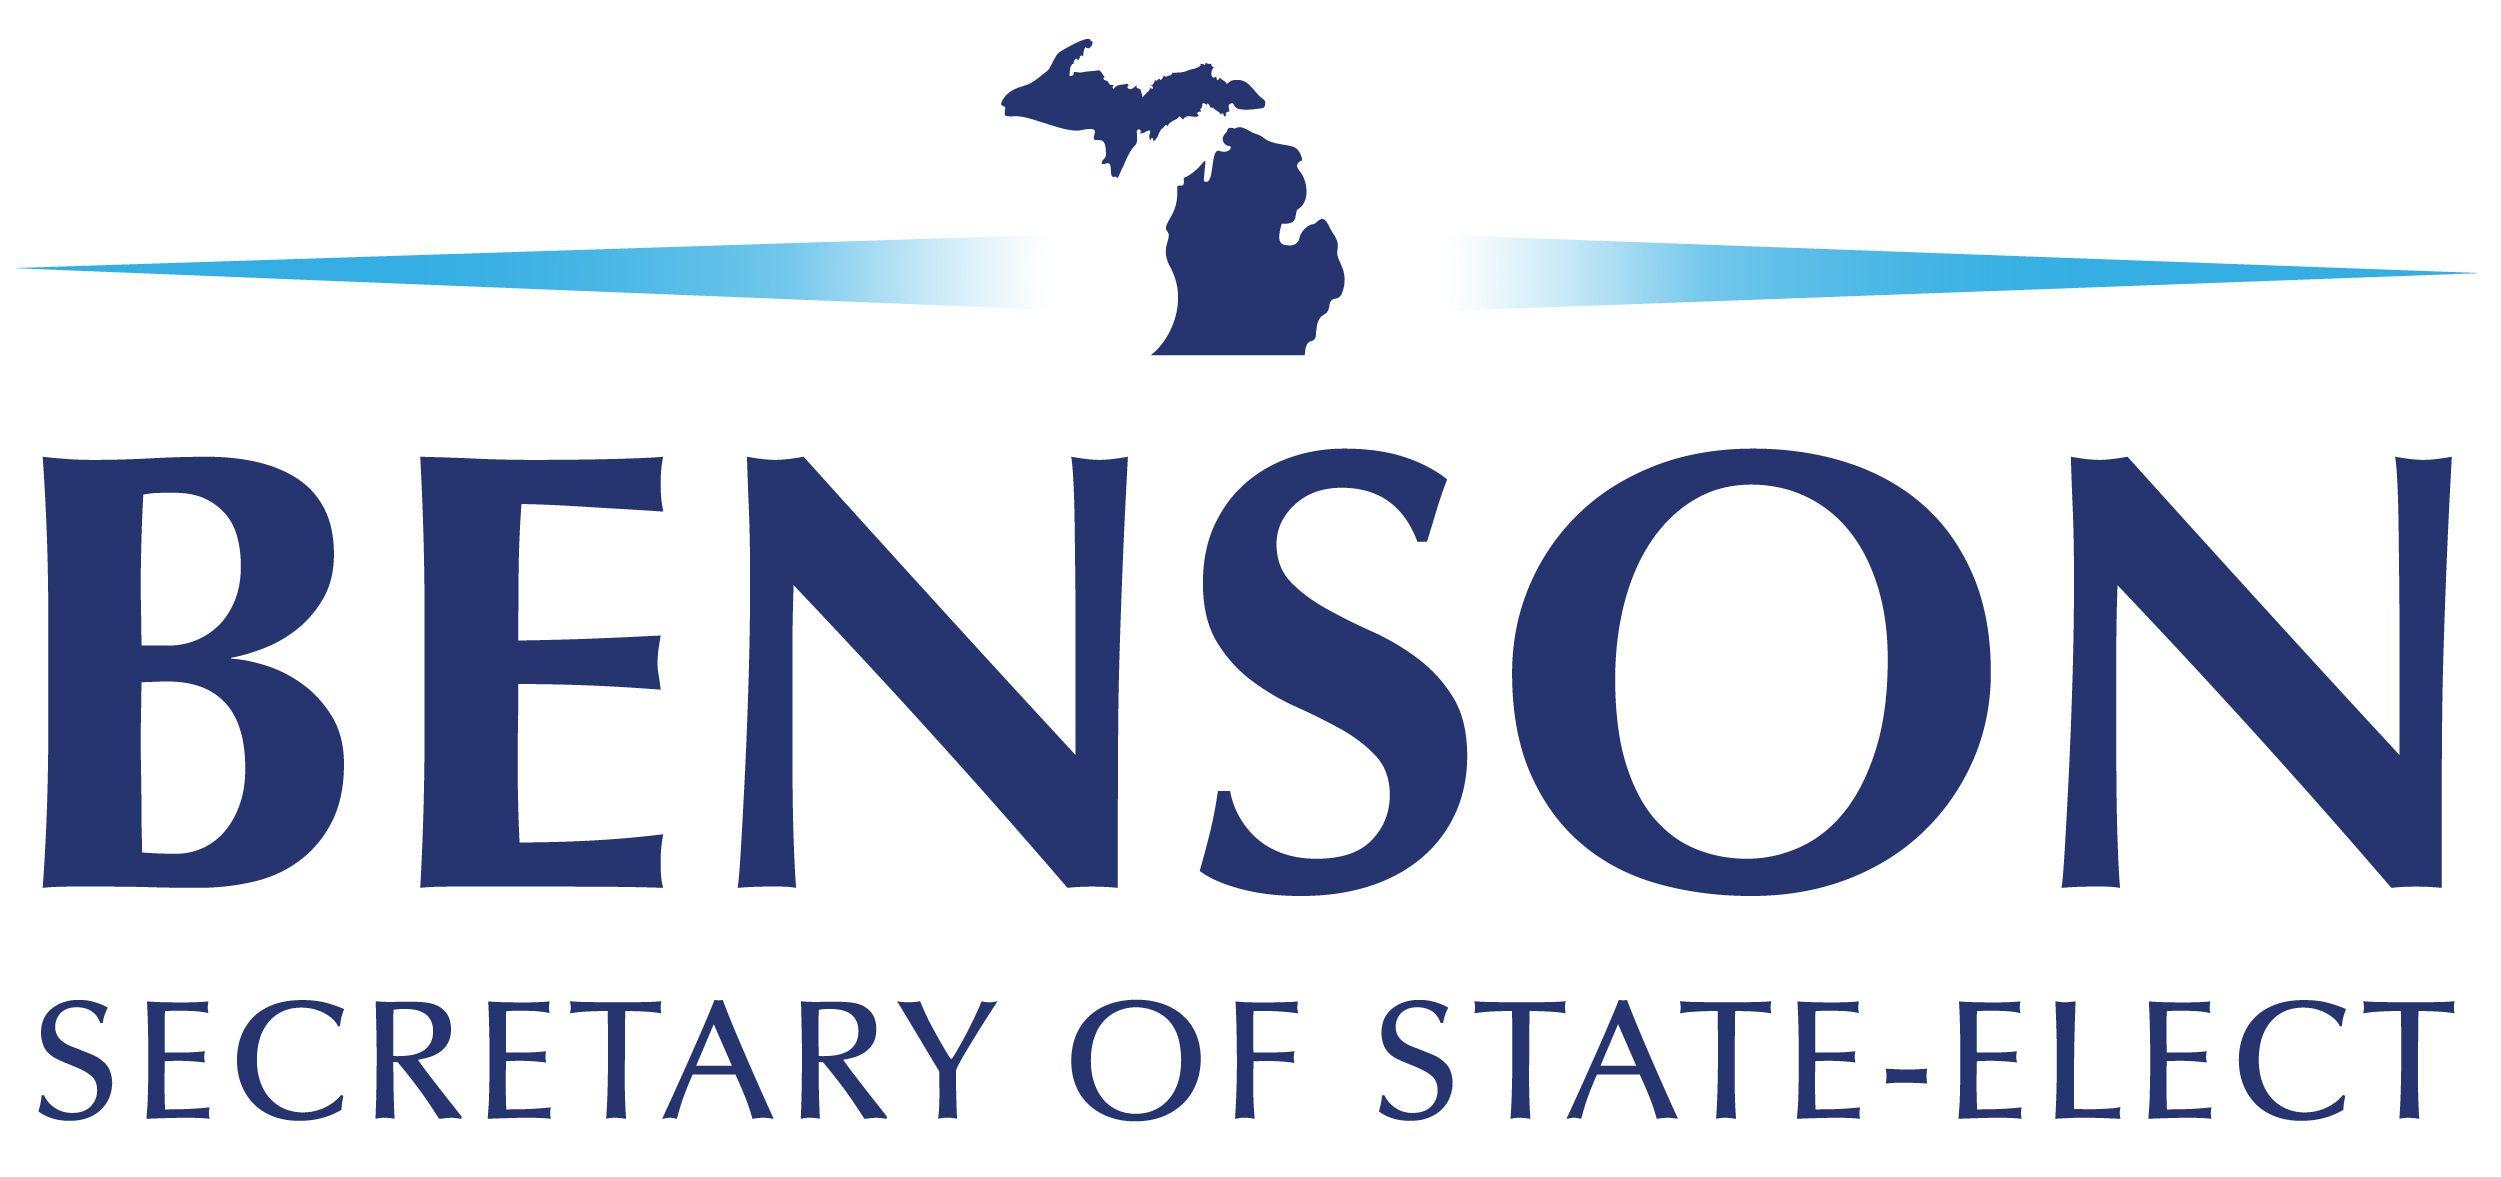 Benson Logo - Benson Updated Logo 02 Benson For Secretary Of State